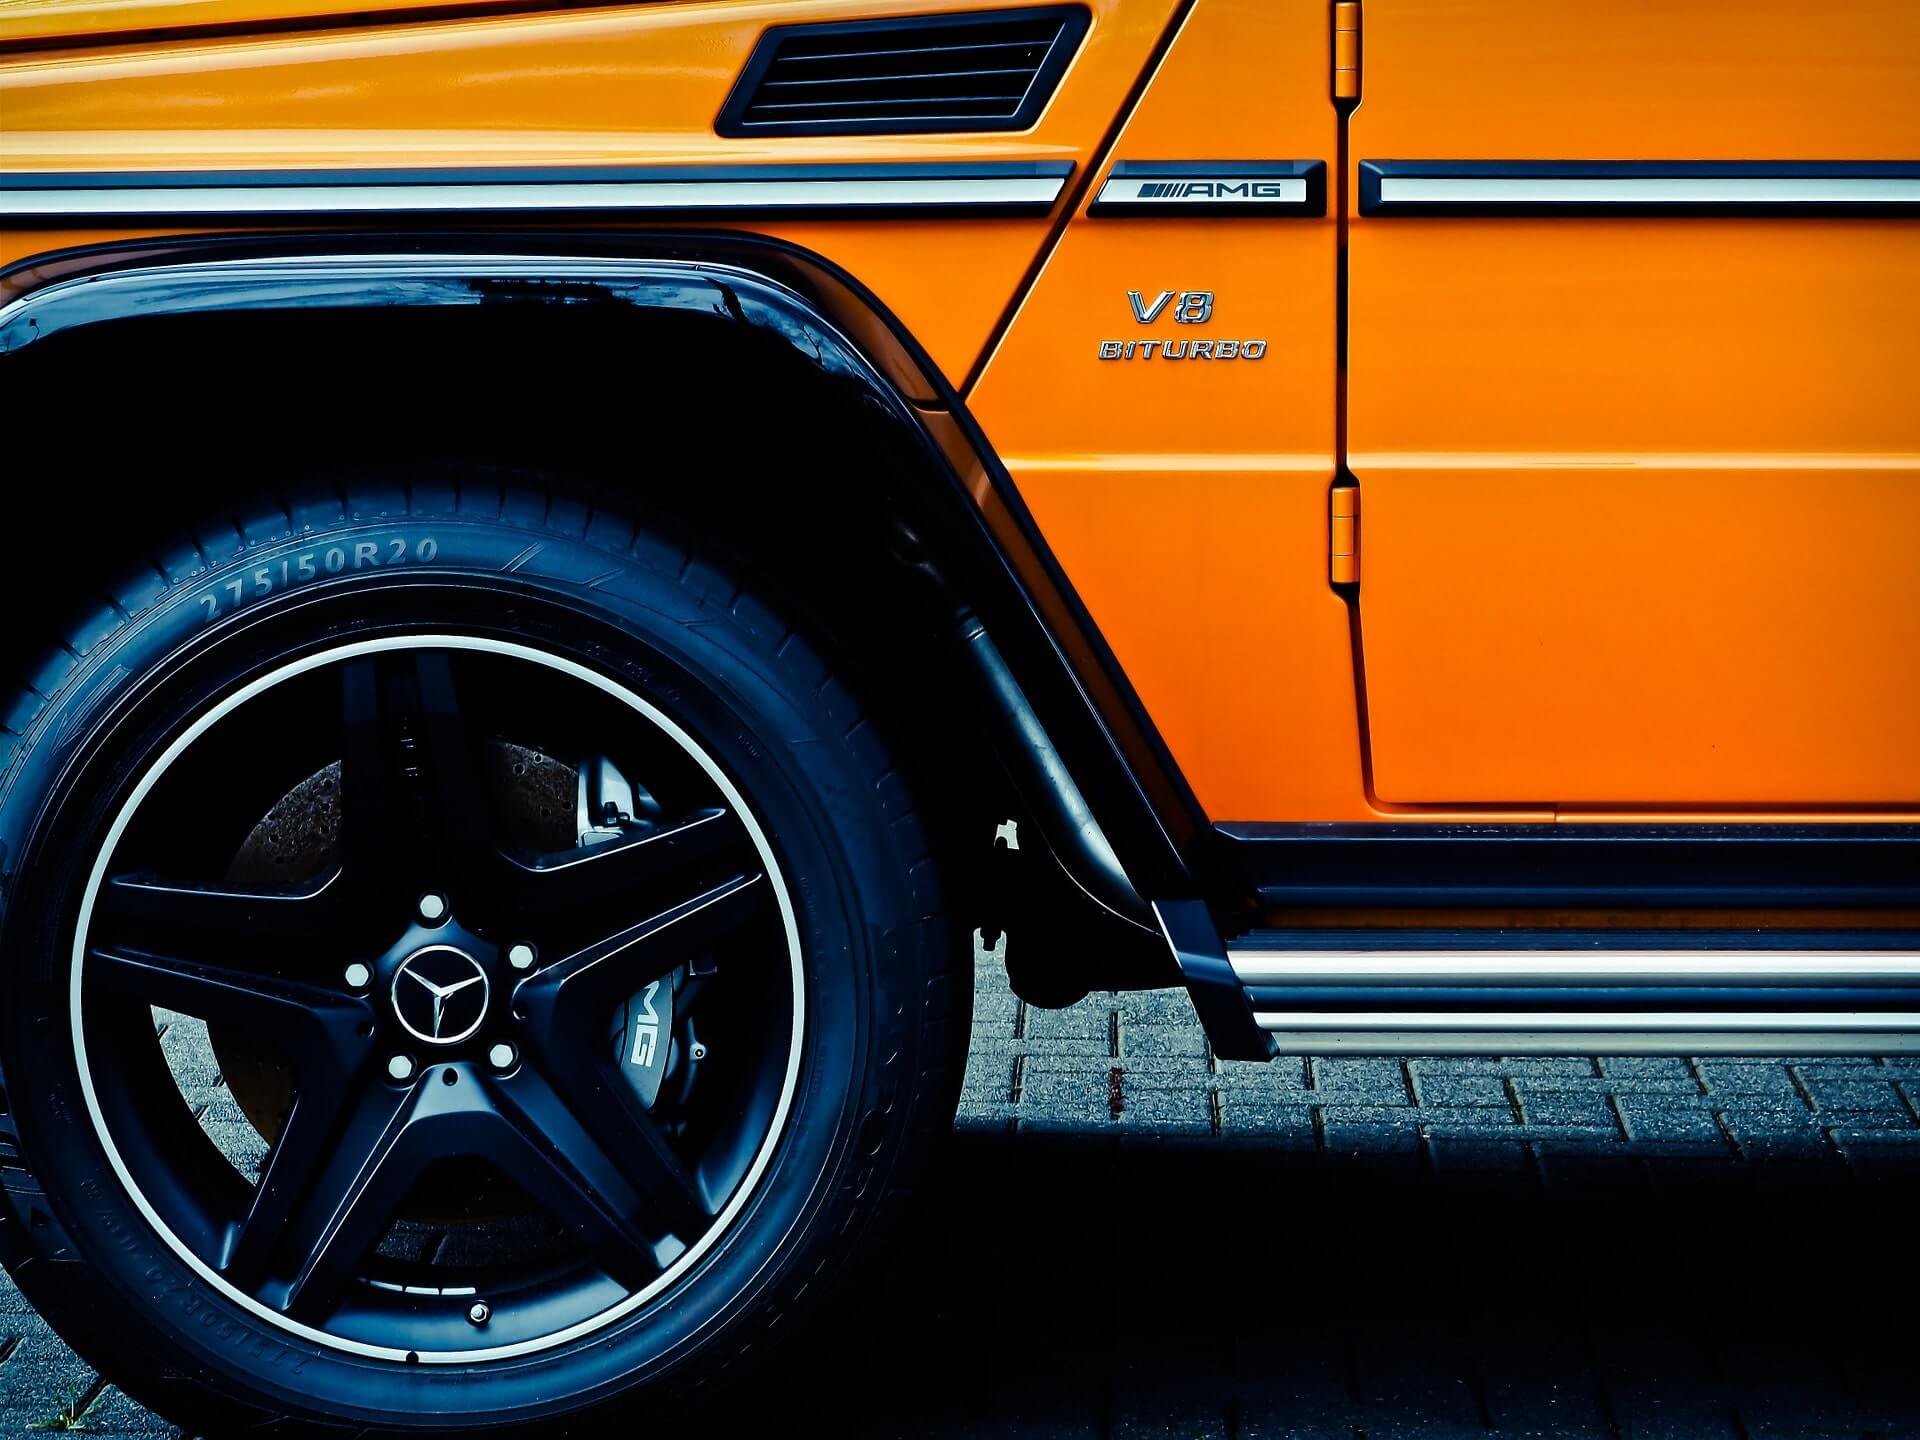 Llamativa rueda delantera izquierda negra, puerta parcial brillante y estribo plateado brillante de un SUV naranja